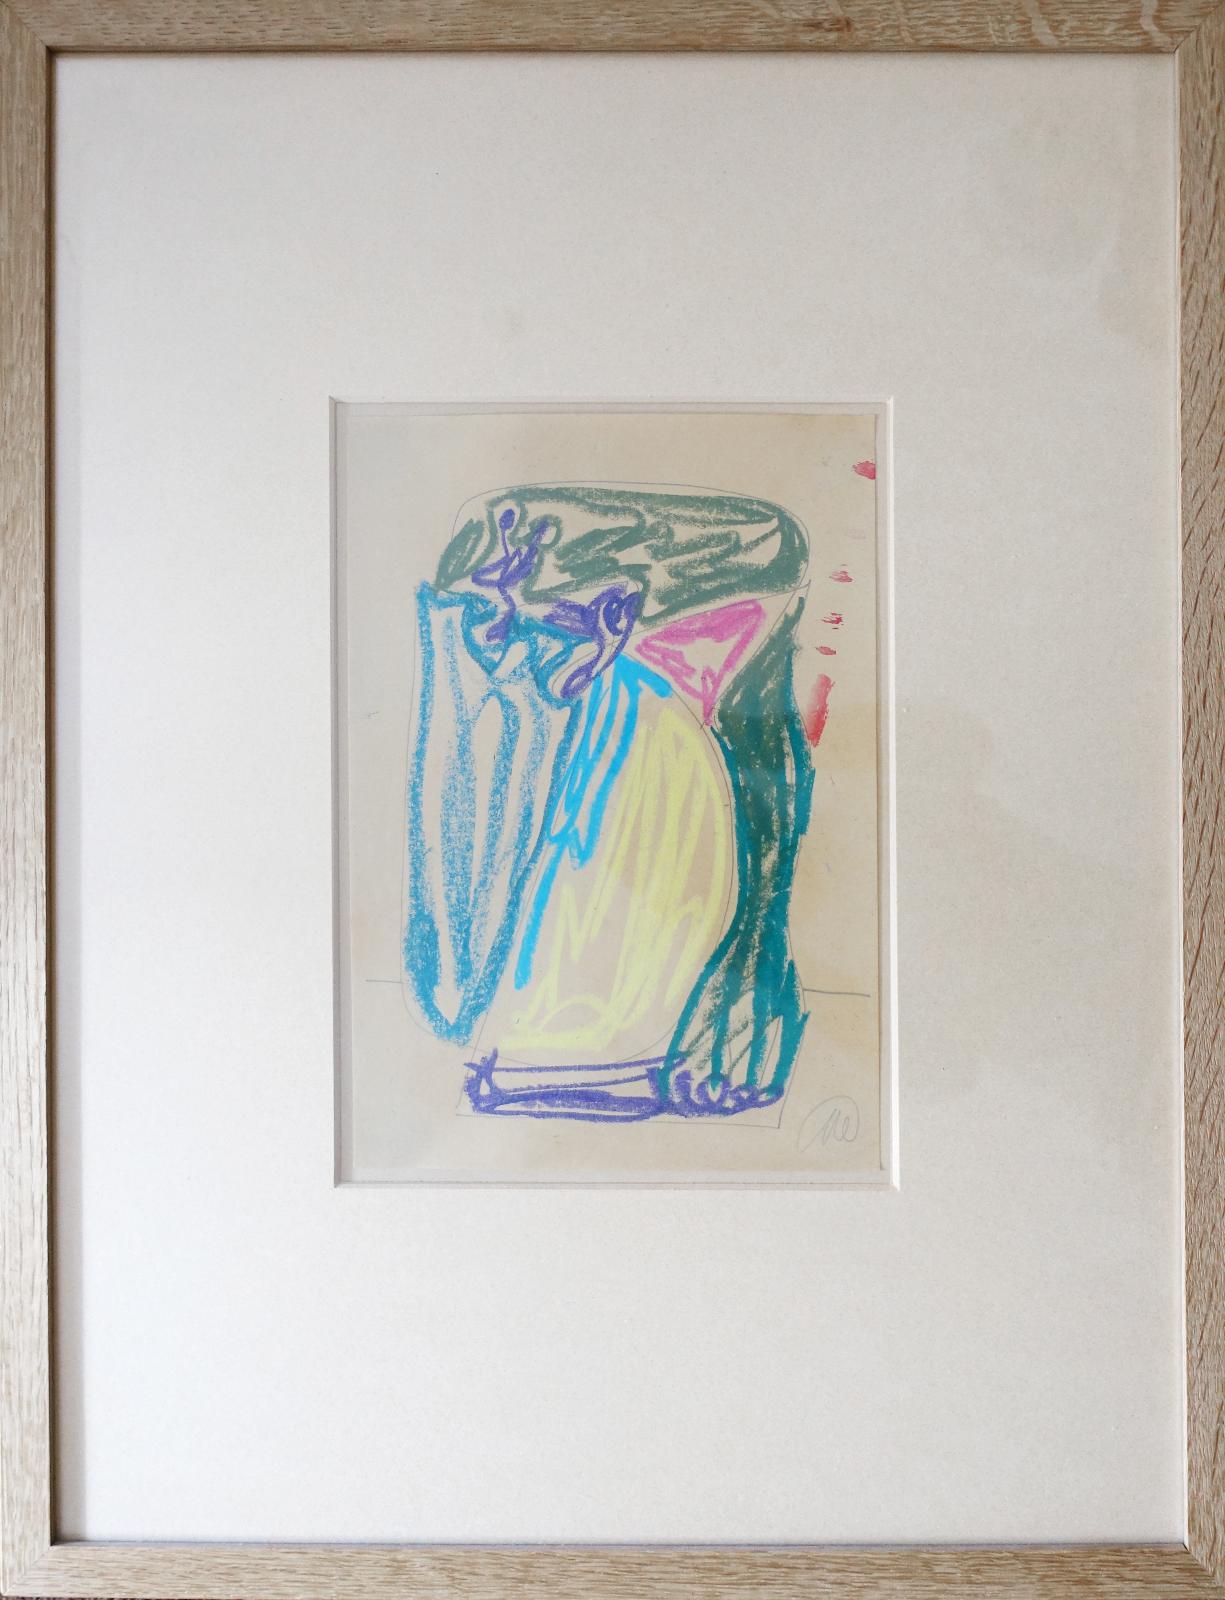 Markus Lüpertz, Pastell auf Papier, Bildmaß 29,5 cm x 20 cm, Preis auf Anfrage